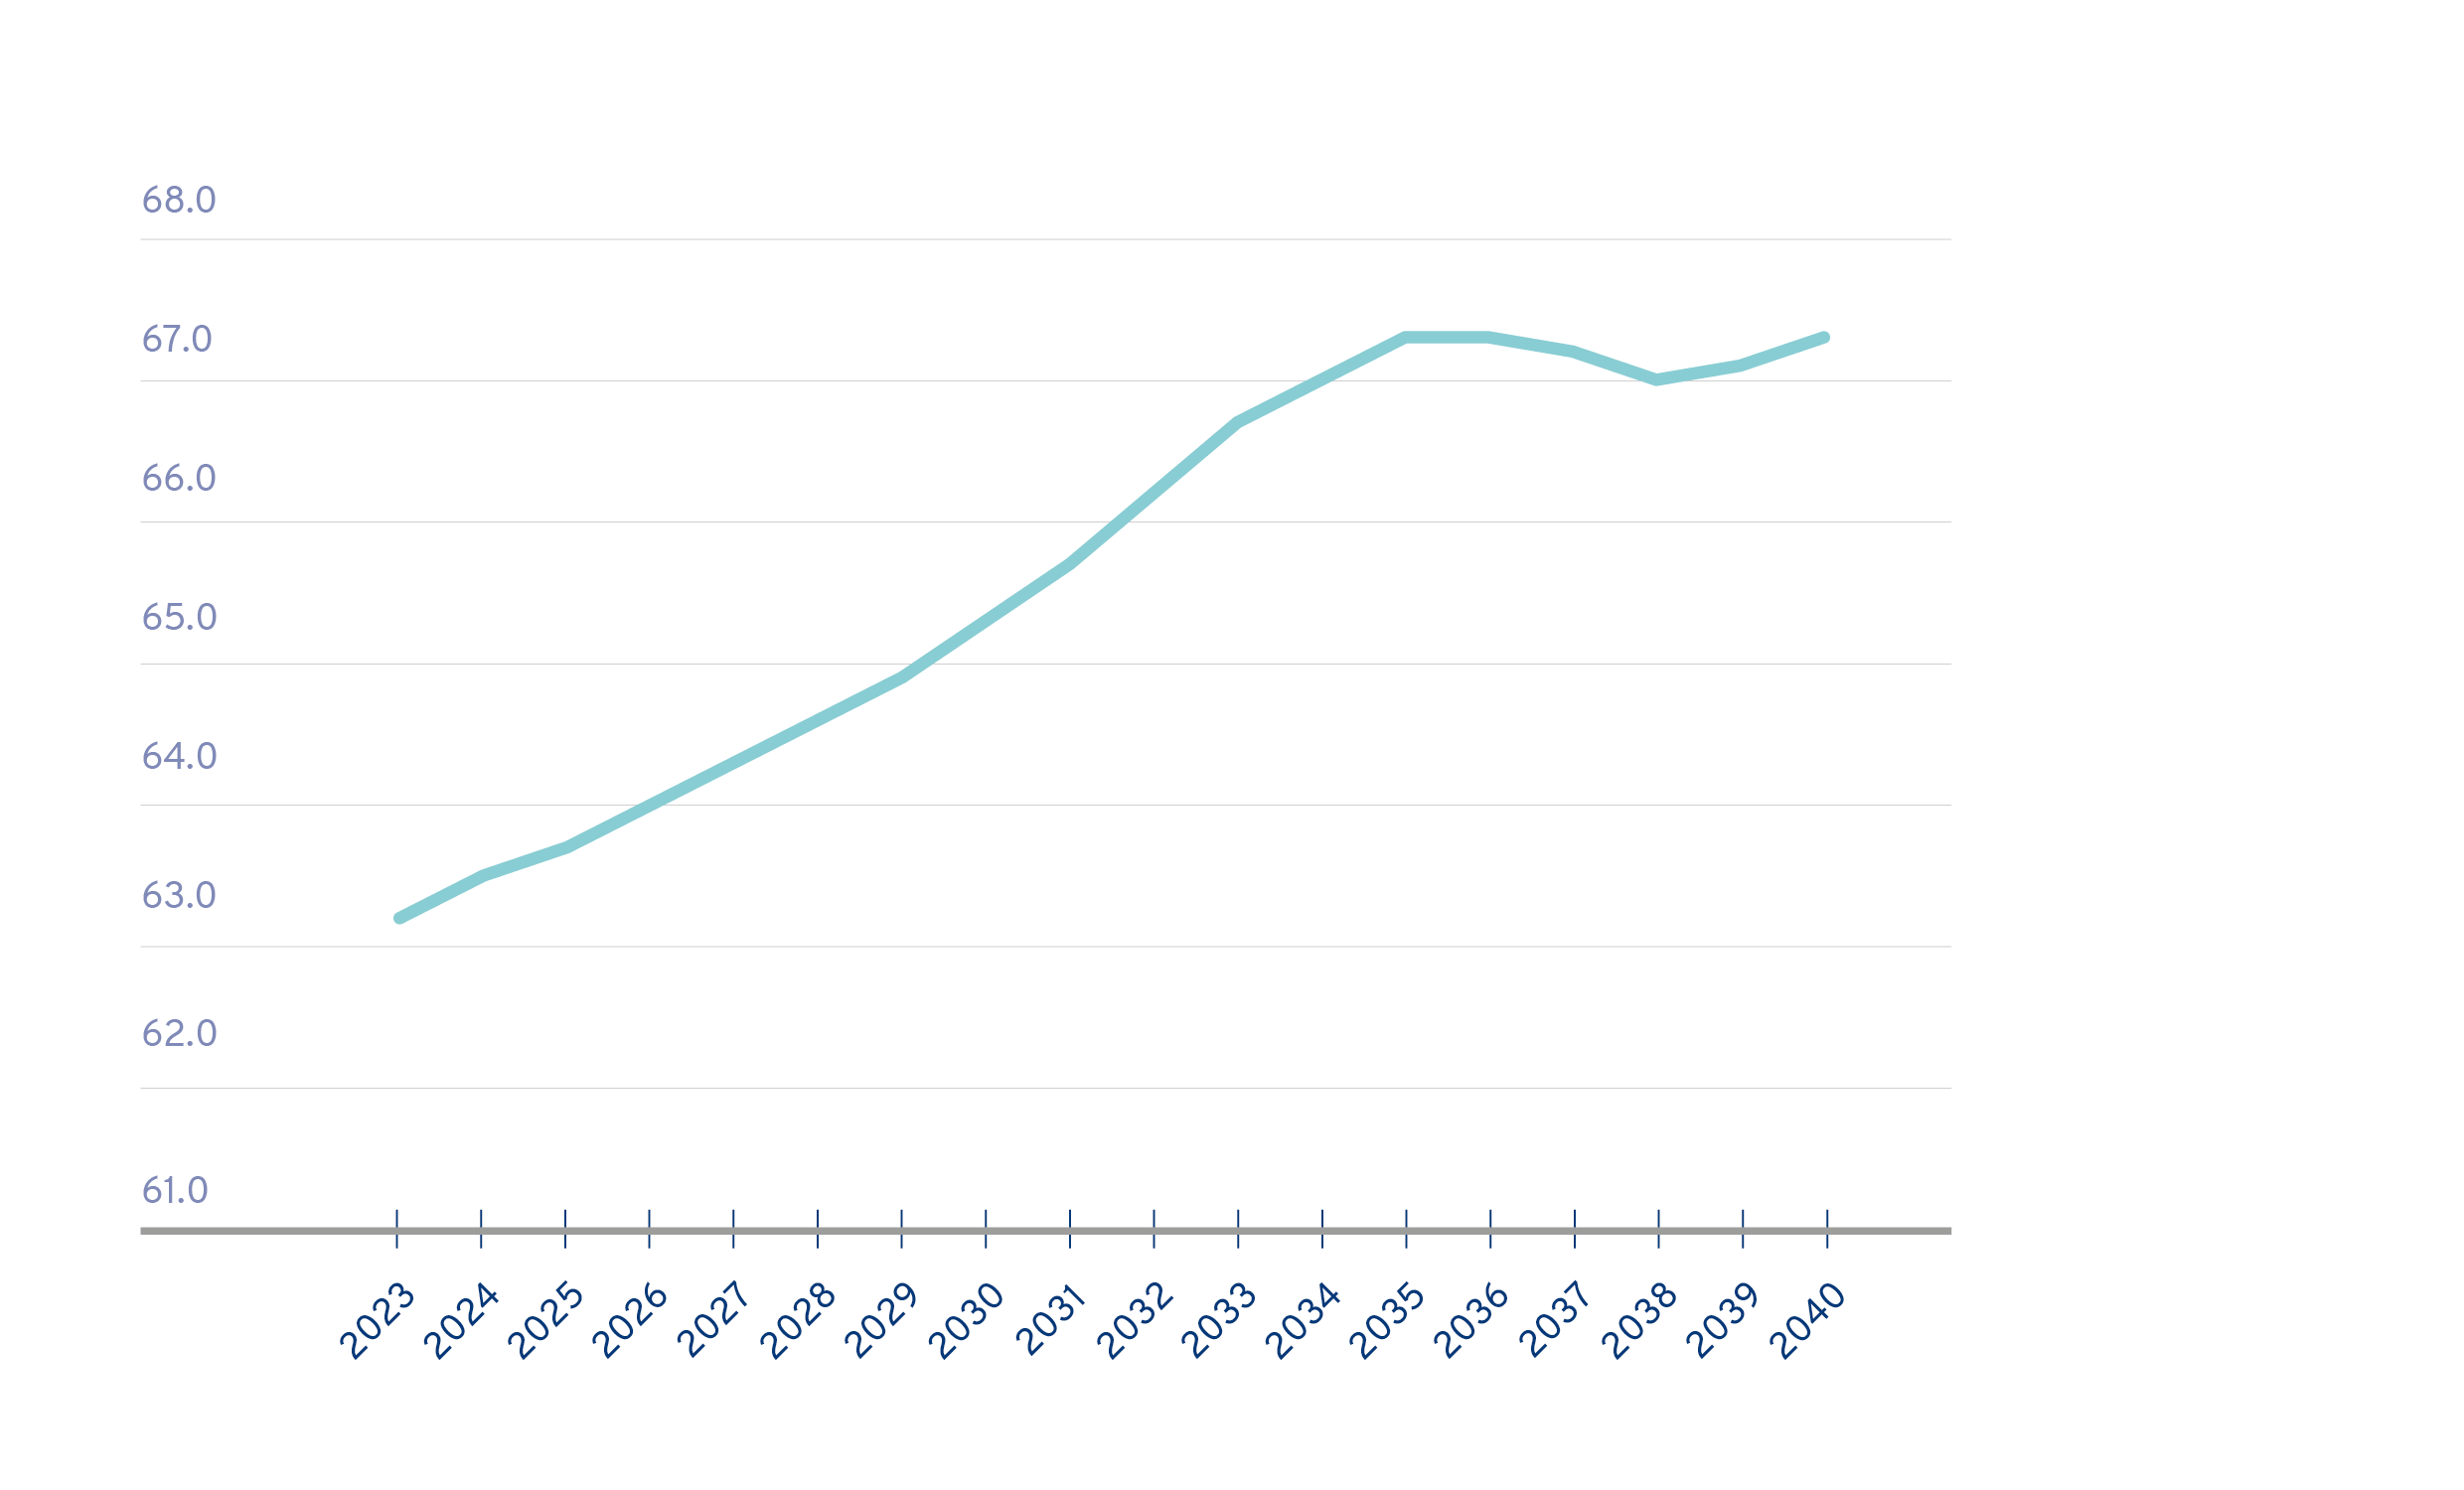 Graafi, joka ennustaa väestöllisen huoltosuhteen kehittymistä vuosina 2023-2024: Väestön ikääntyessä alle 15-vuotiaiden ja yli 64-vuotiaiden määrä suhteessa työikäiseen väestöön kasvaa. Huoltosuhde oli Suomessa vielä vuonna 1990 alle 50, mutta nousee ennusteen mukaan 2030-luvulla yli 67:ään.